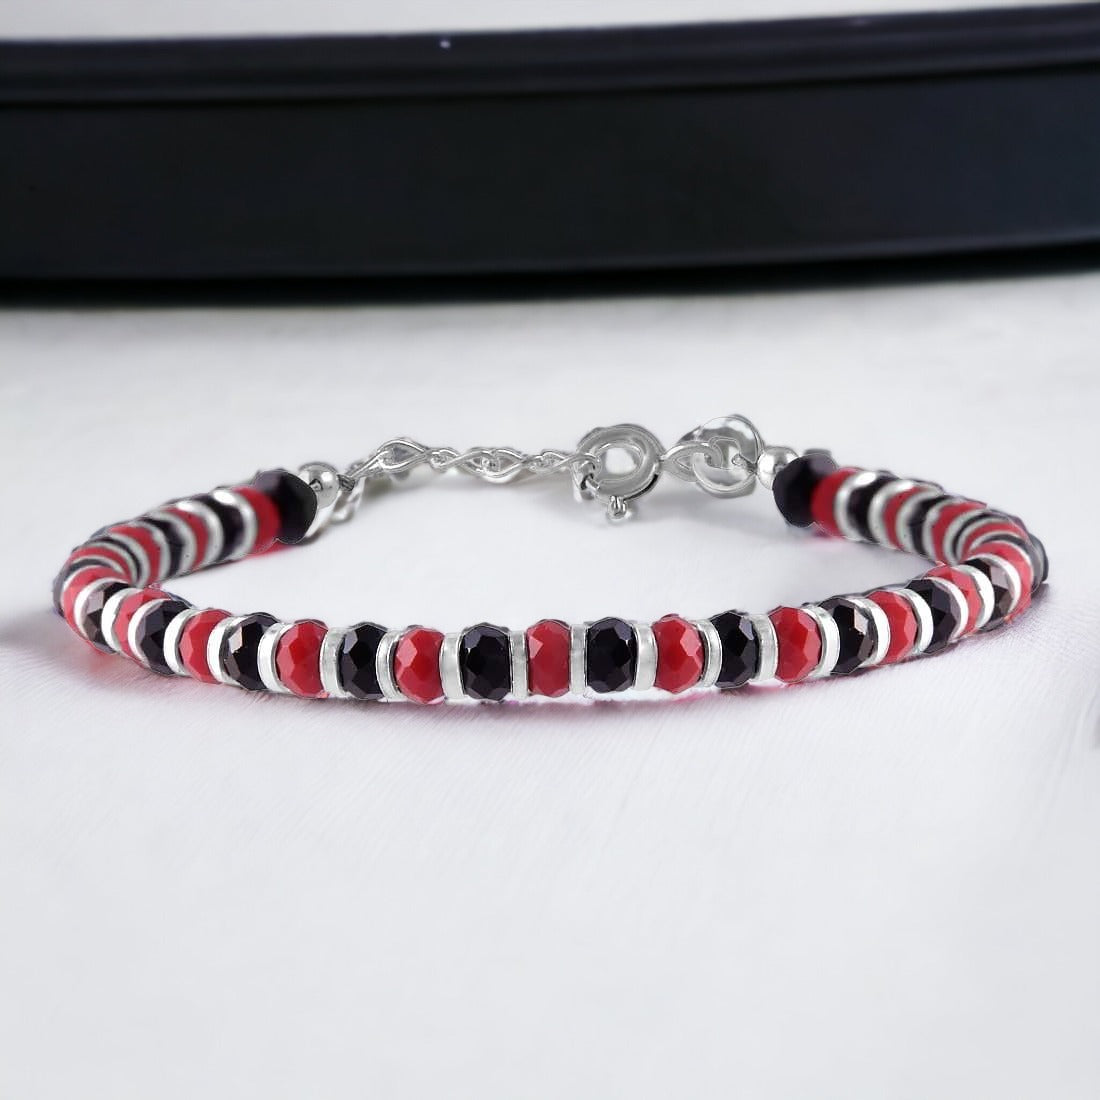 Beads Charm Bracelet For Women & Girls